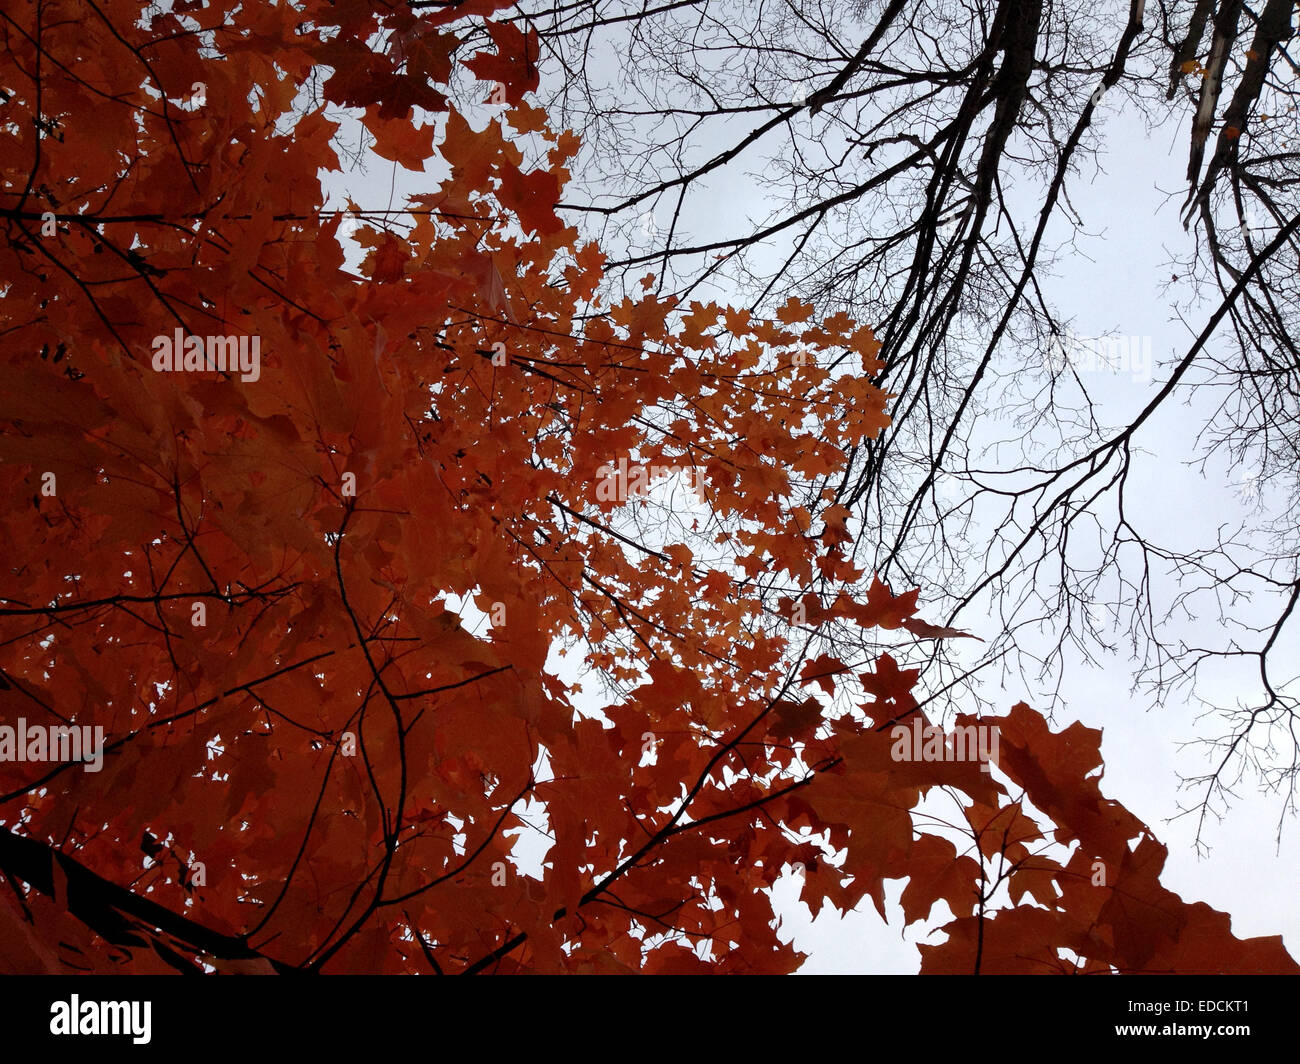 Low-Winkel gedreht Wechsel der Saison Herbst-Winter in einem kanadischen Park, den Kontrast der roten Blätter Cluster & dünnen braunen Ästen Stockfoto